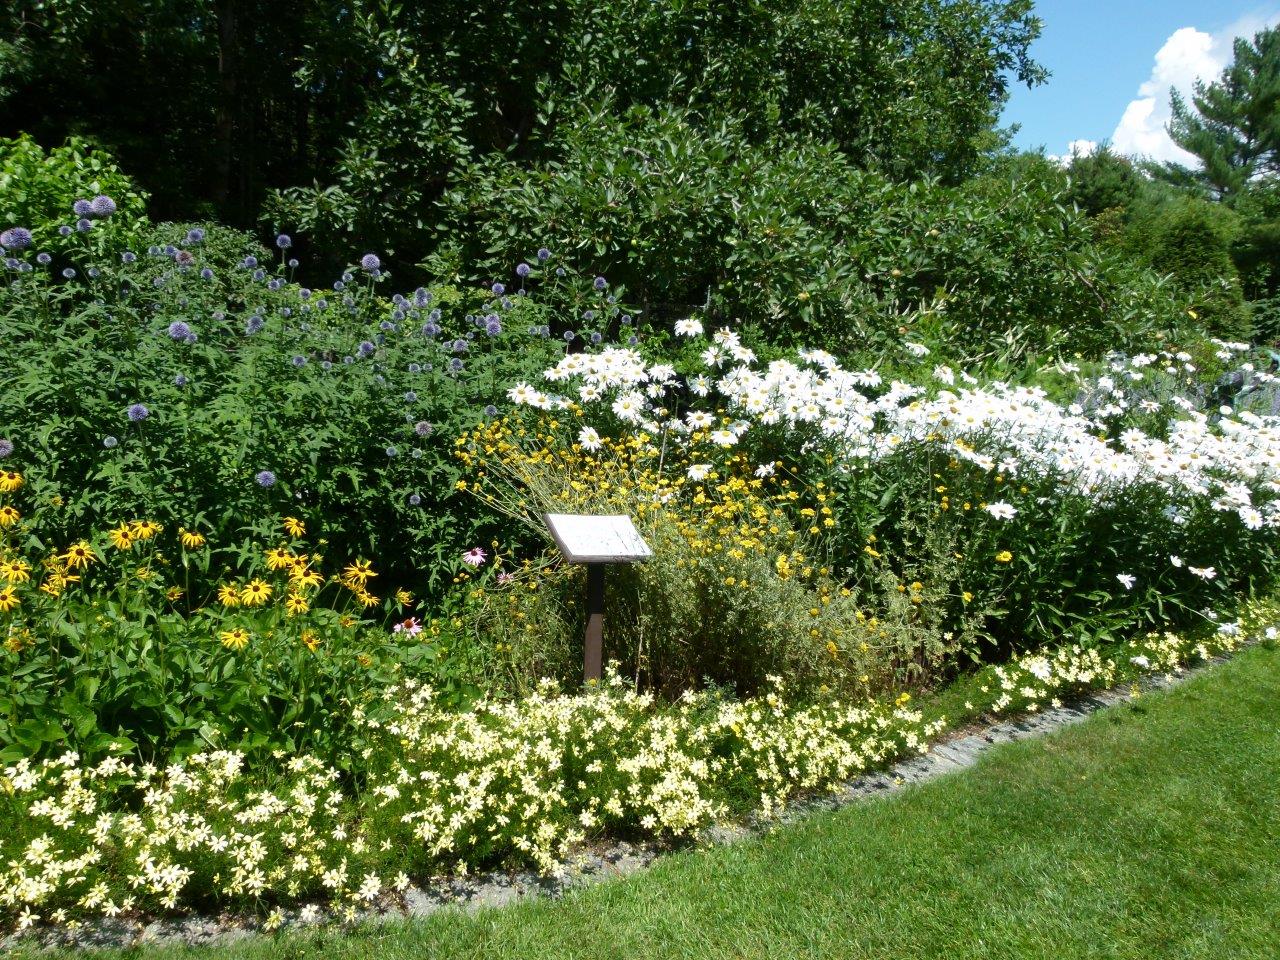 Flowers at Kirkwood Gardens